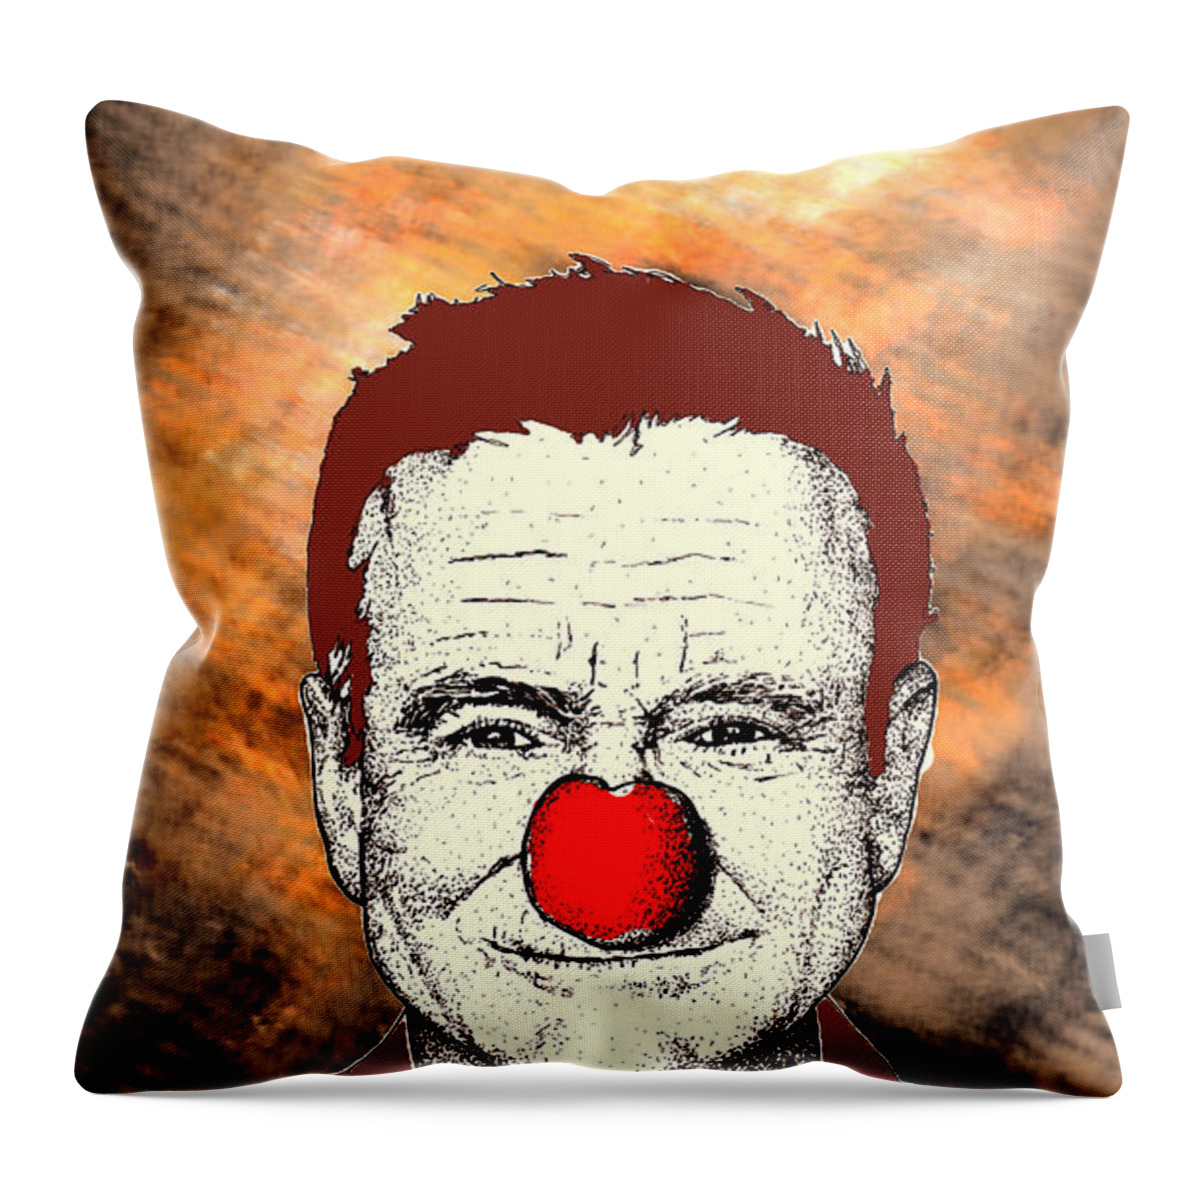 Robin Throw Pillow featuring the digital art Robin Williams 2 by Jason Tricktop Matthews